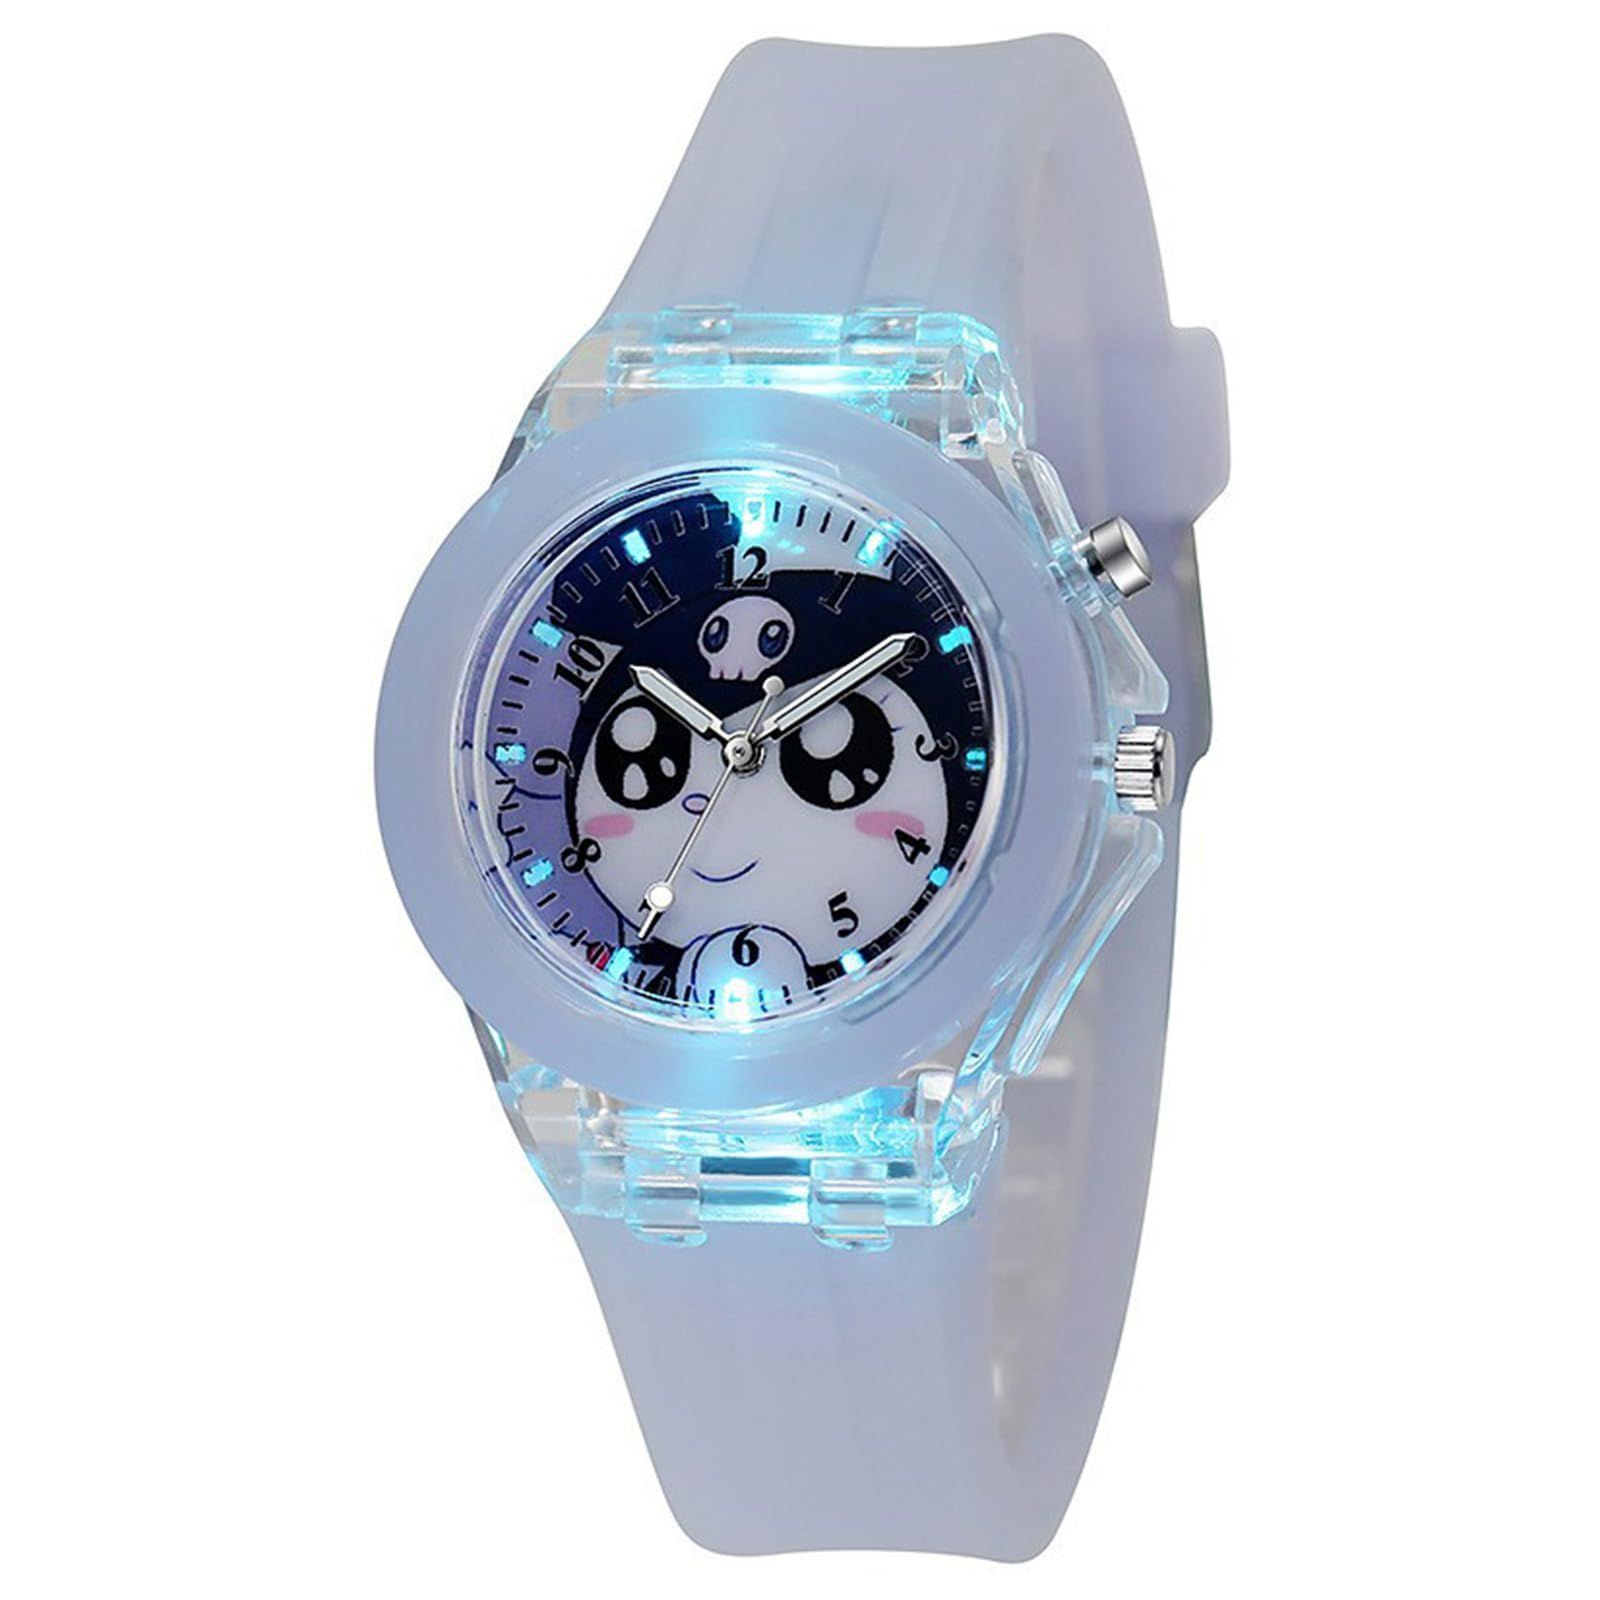 【特価商品】サンリオ 腕時計 子供 ォーツ時計 腕時計 軽量 クオーツ腕時計 ウォッチ 光る腕時計 格好良い シンプル腕時計 うで時計 かわいい ウォッチ 入学 入園 誕生日 プレゼント 男女兼用 クロミ